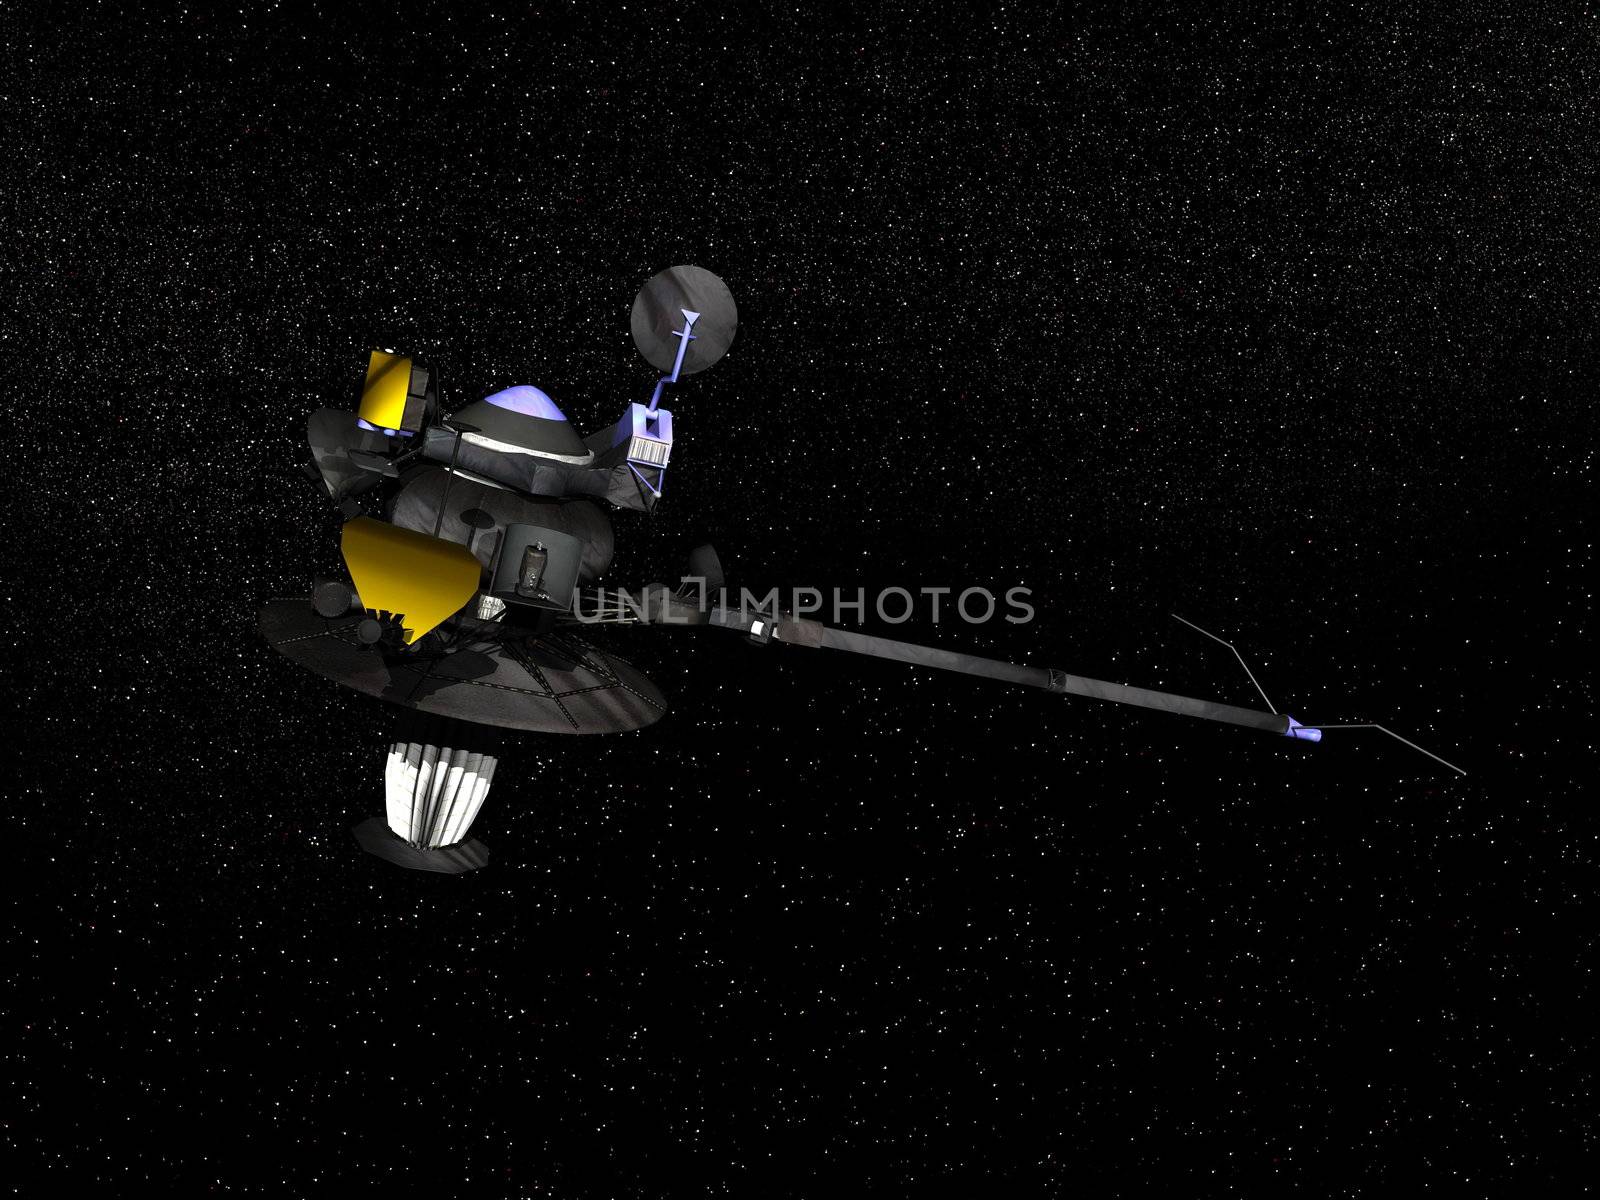 Galileo spacecraft - 3D render by Elenaphotos21